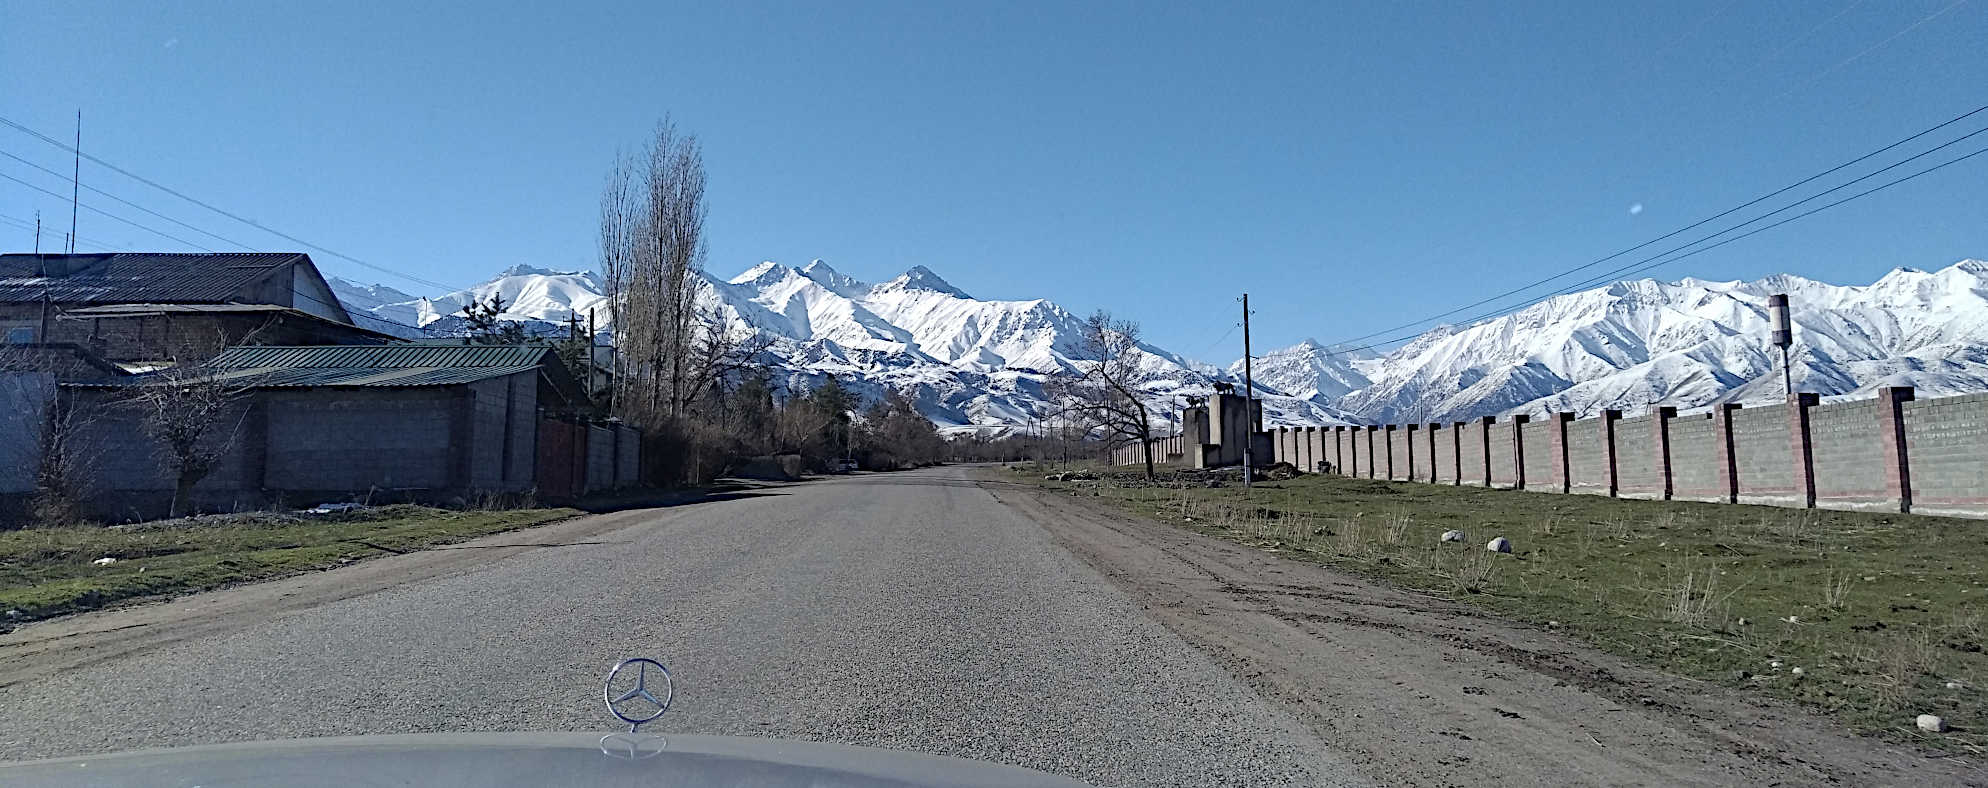 Киргизия: интернет без цензуры, величественные горы и парадокс водителей - 1